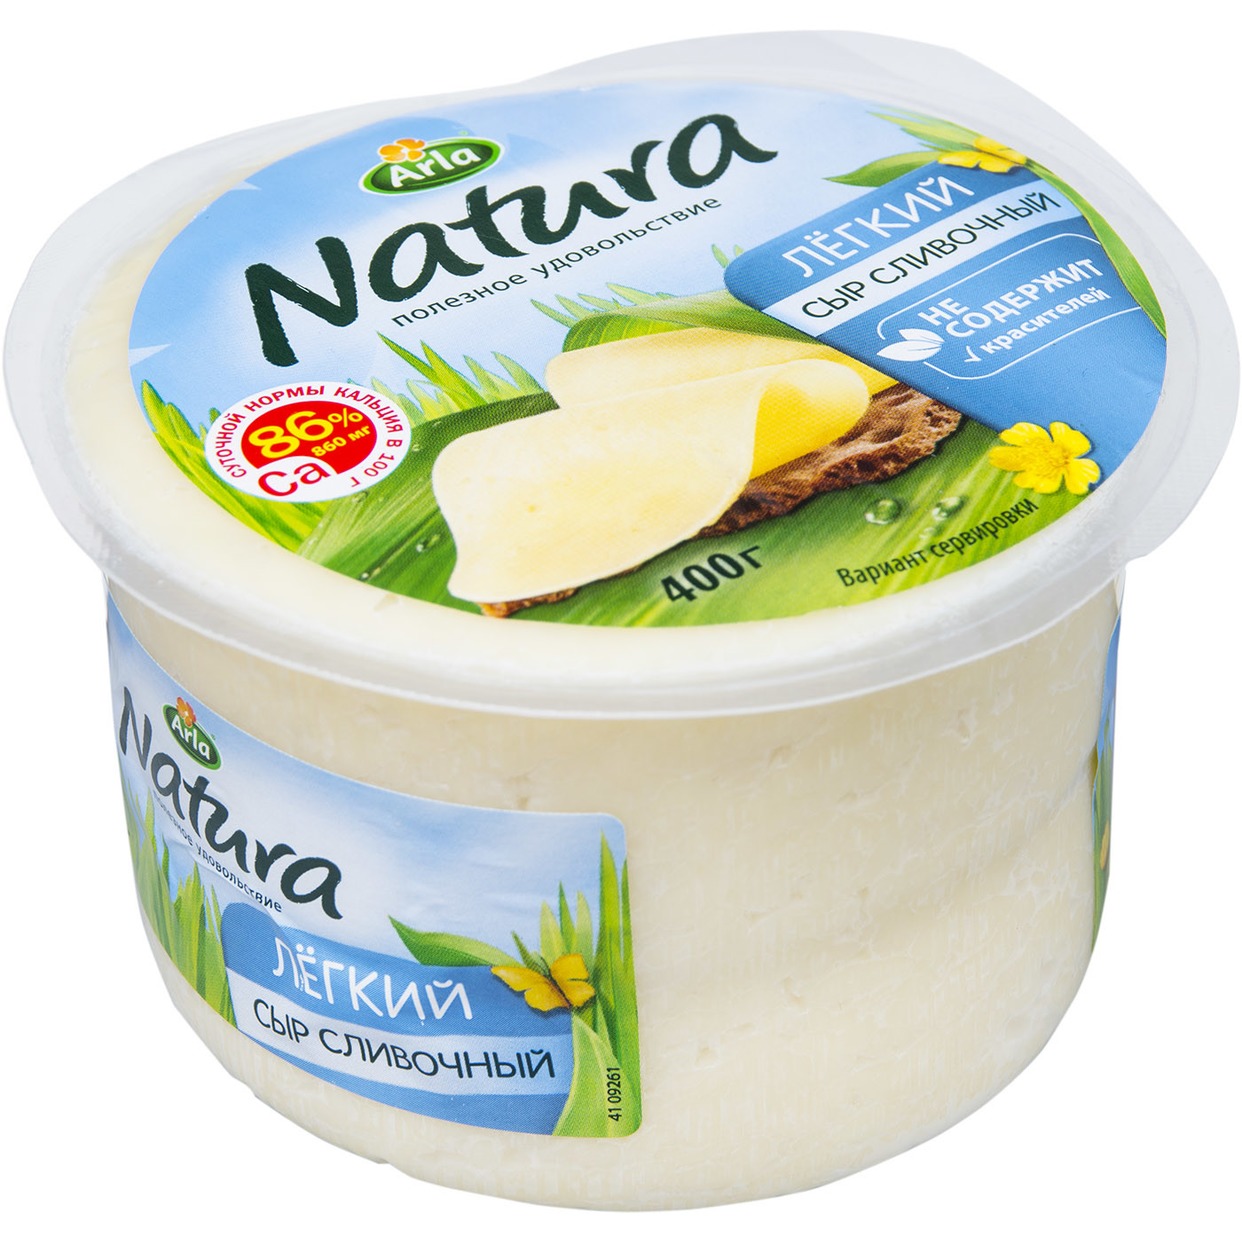 Сыр Arla Natura "Сливочный Легкий" мдж 30% 400 гр по акции в Пятерочке